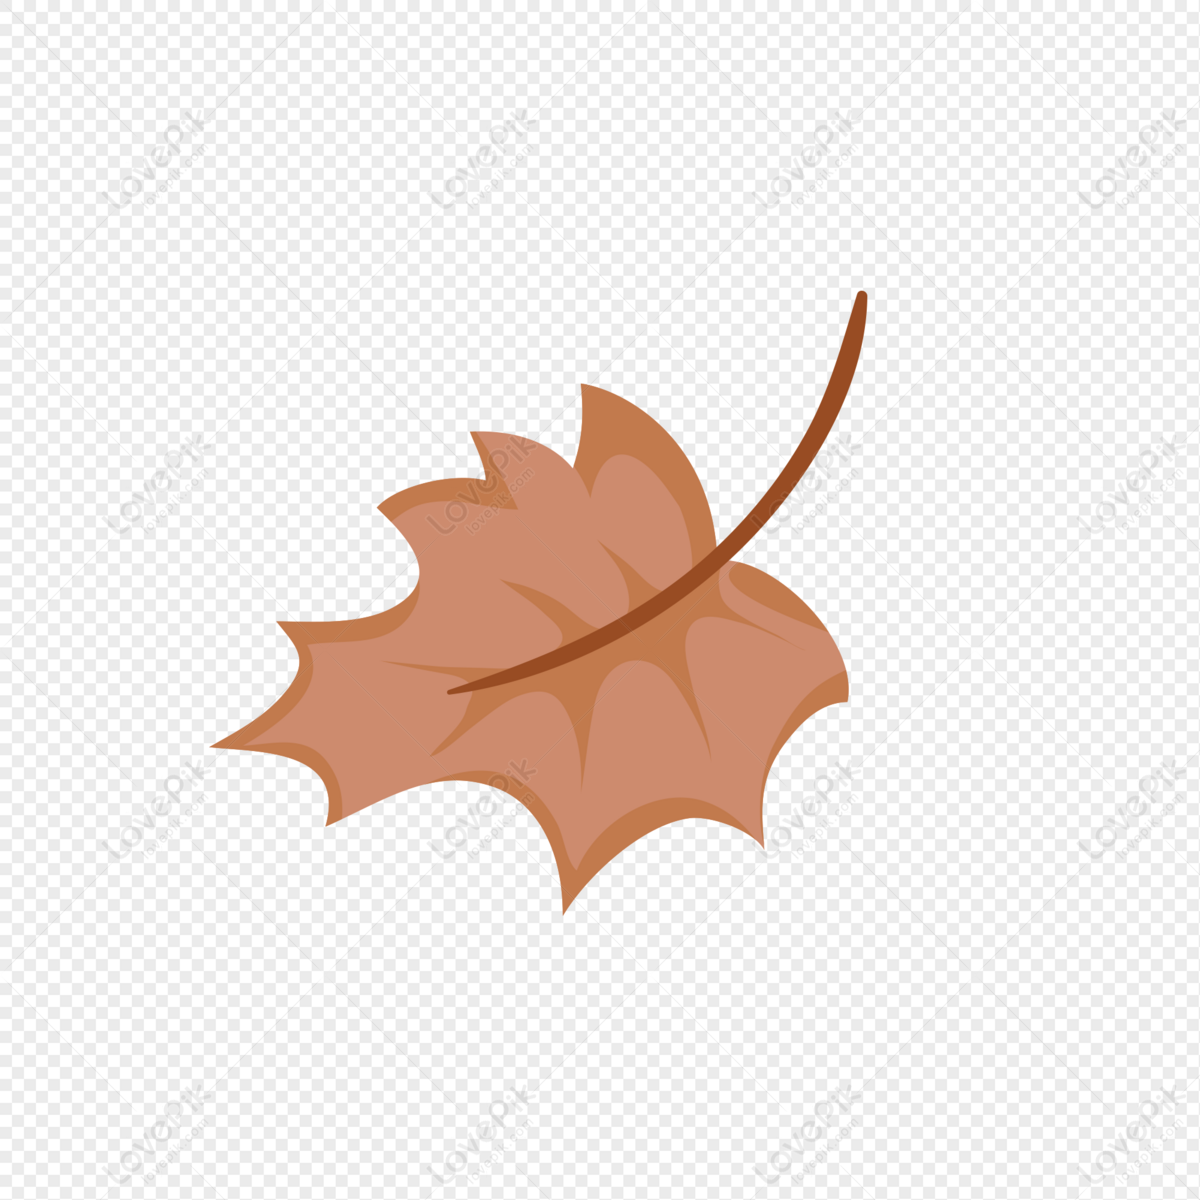 maple leaves cartoon